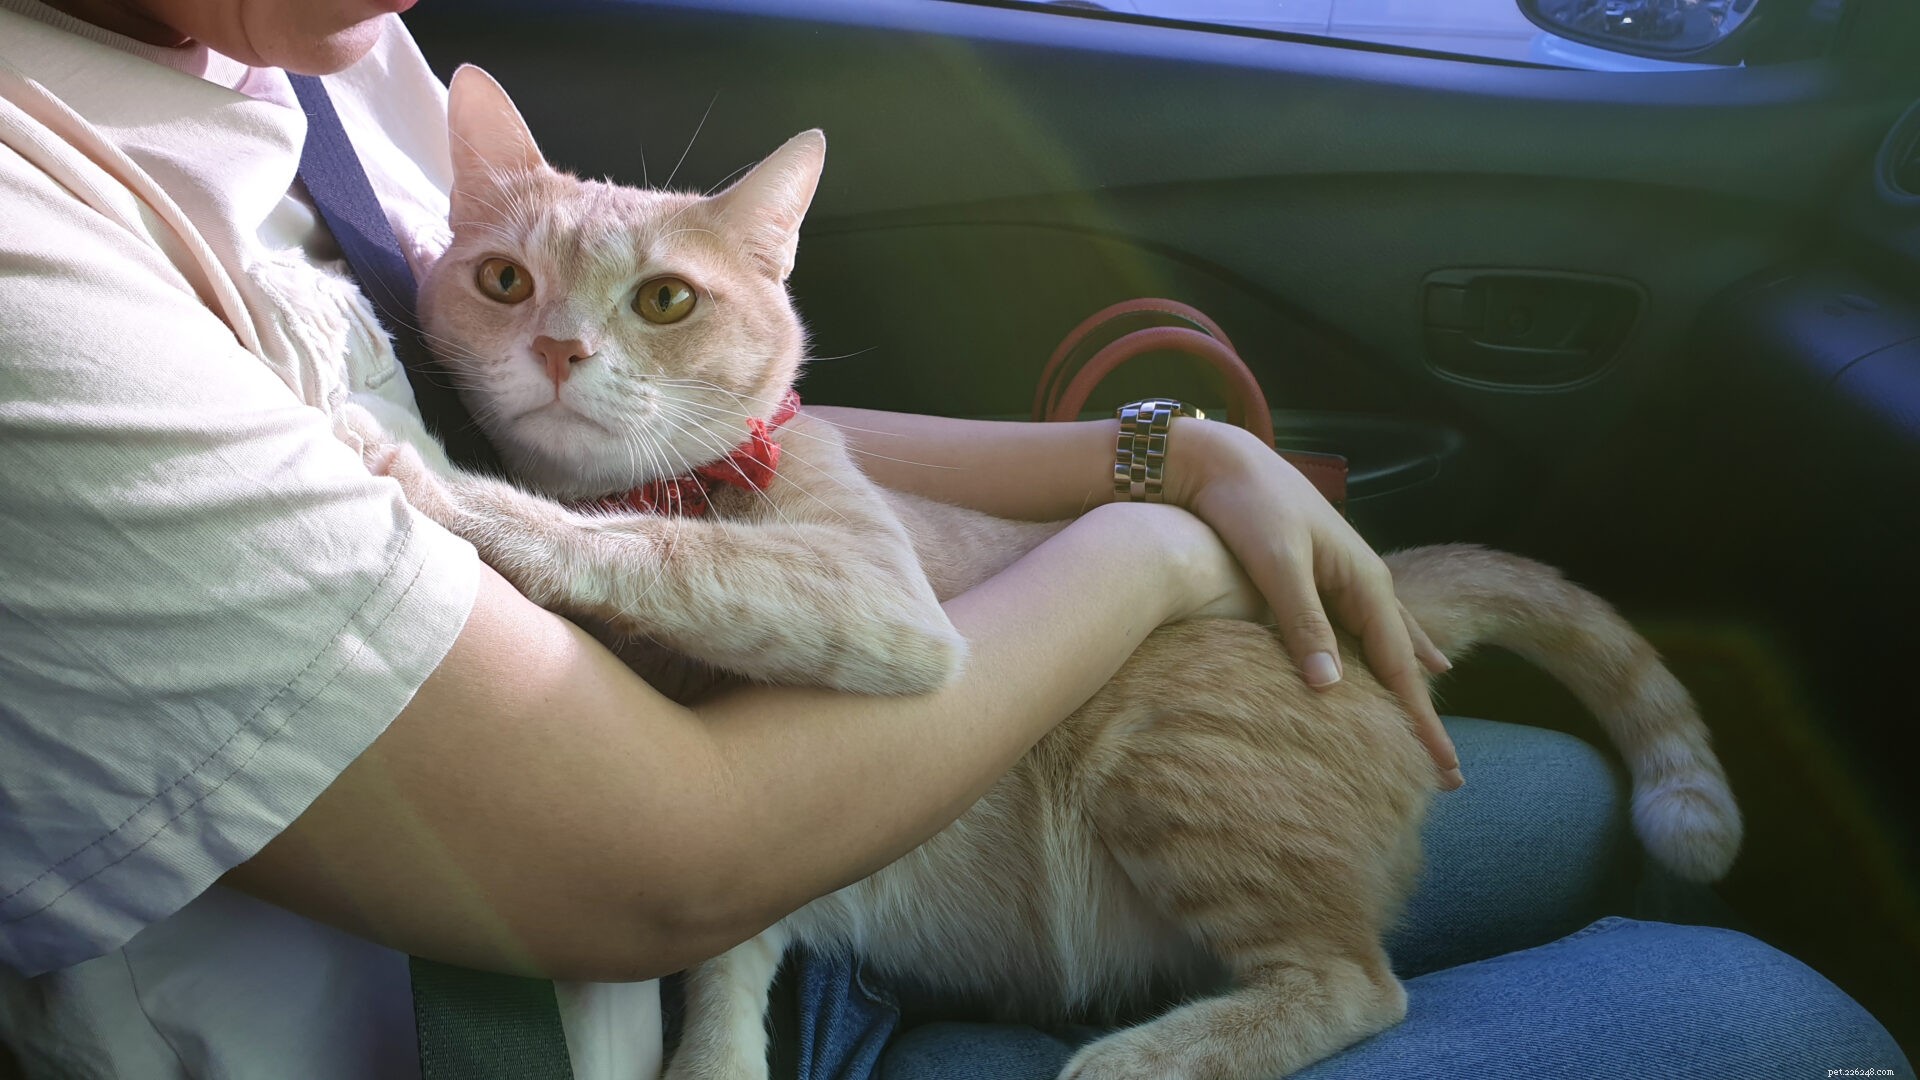 Perché i gatti odiano i giri in macchina?